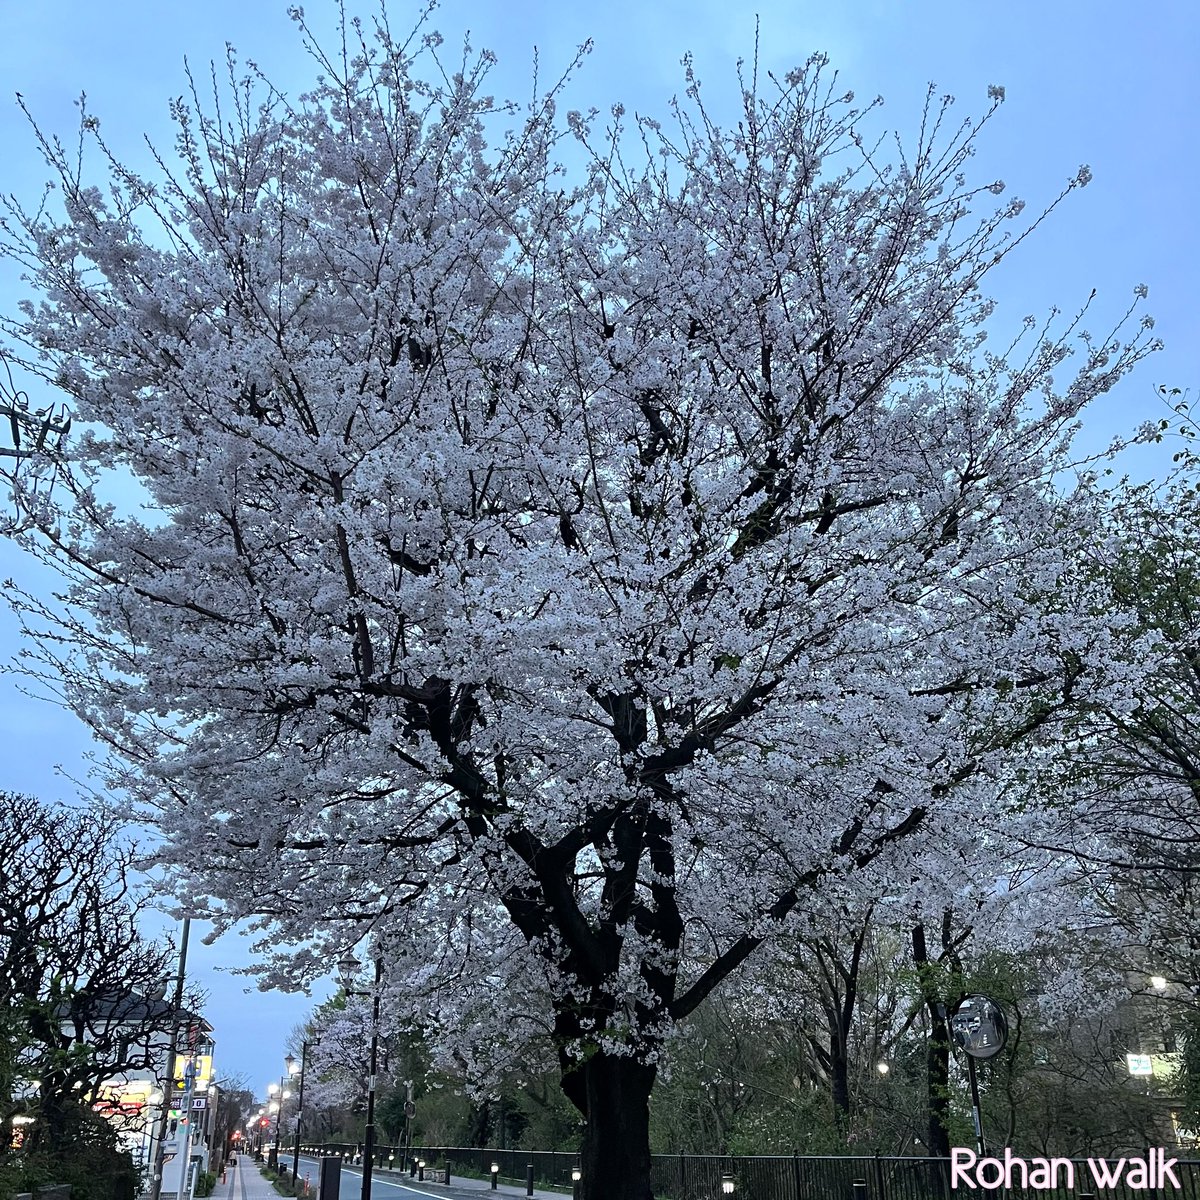 路庵さん歩（御殿山通り）御殿山通りの桜の老木。いと美し。土日が晴れればいいんだけどな。#路庵さん歩 #桜 #御殿山通り #玉川上水